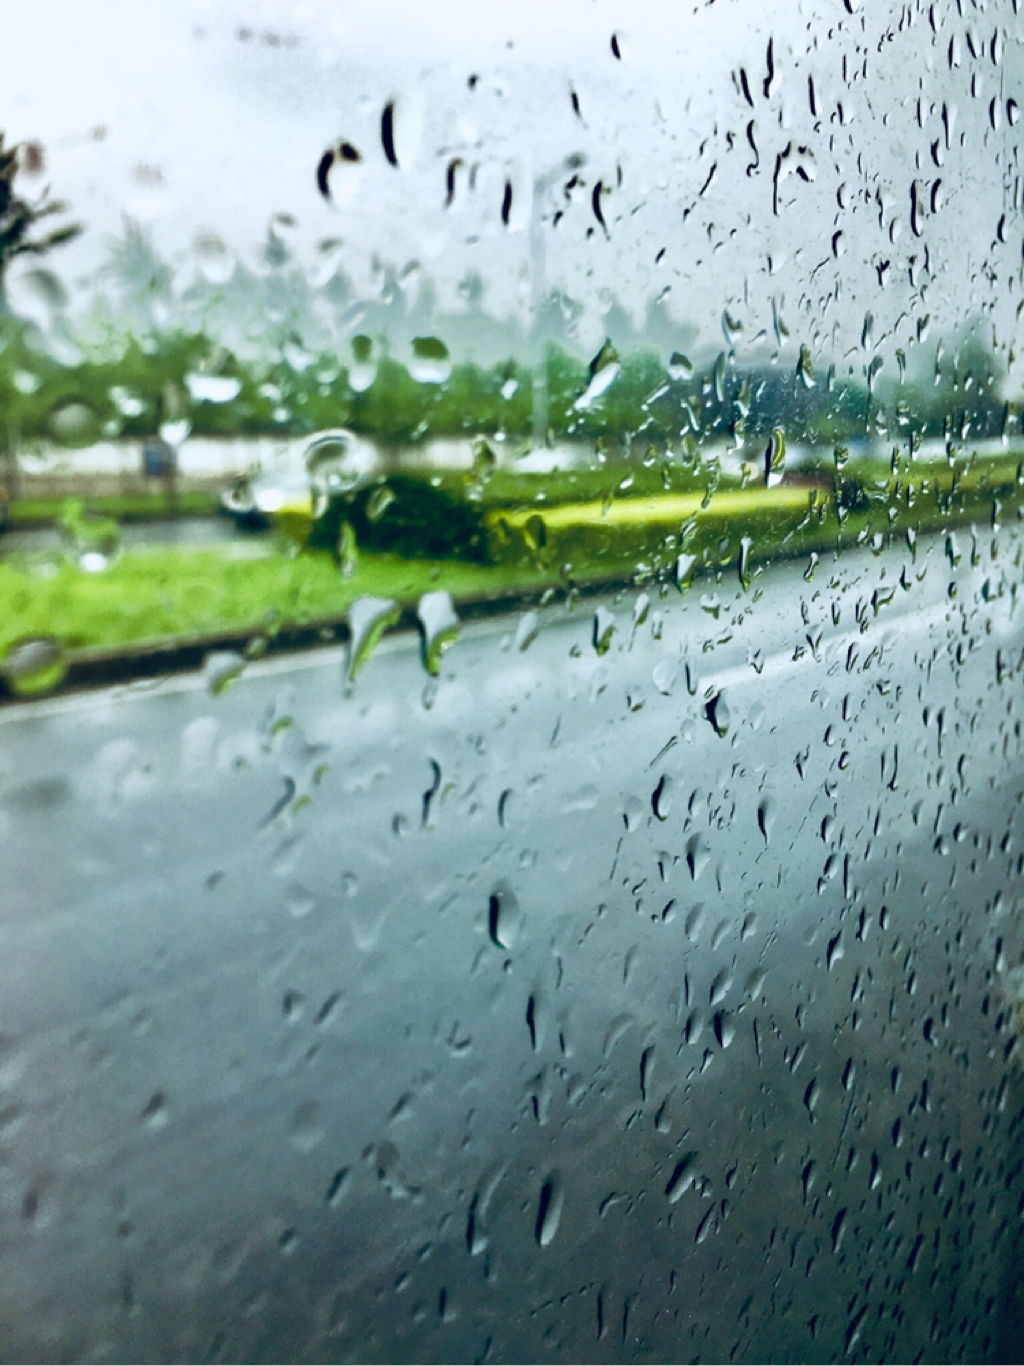 手机摄影大赛#喜欢下雨天,喜欢雨打窗的声音